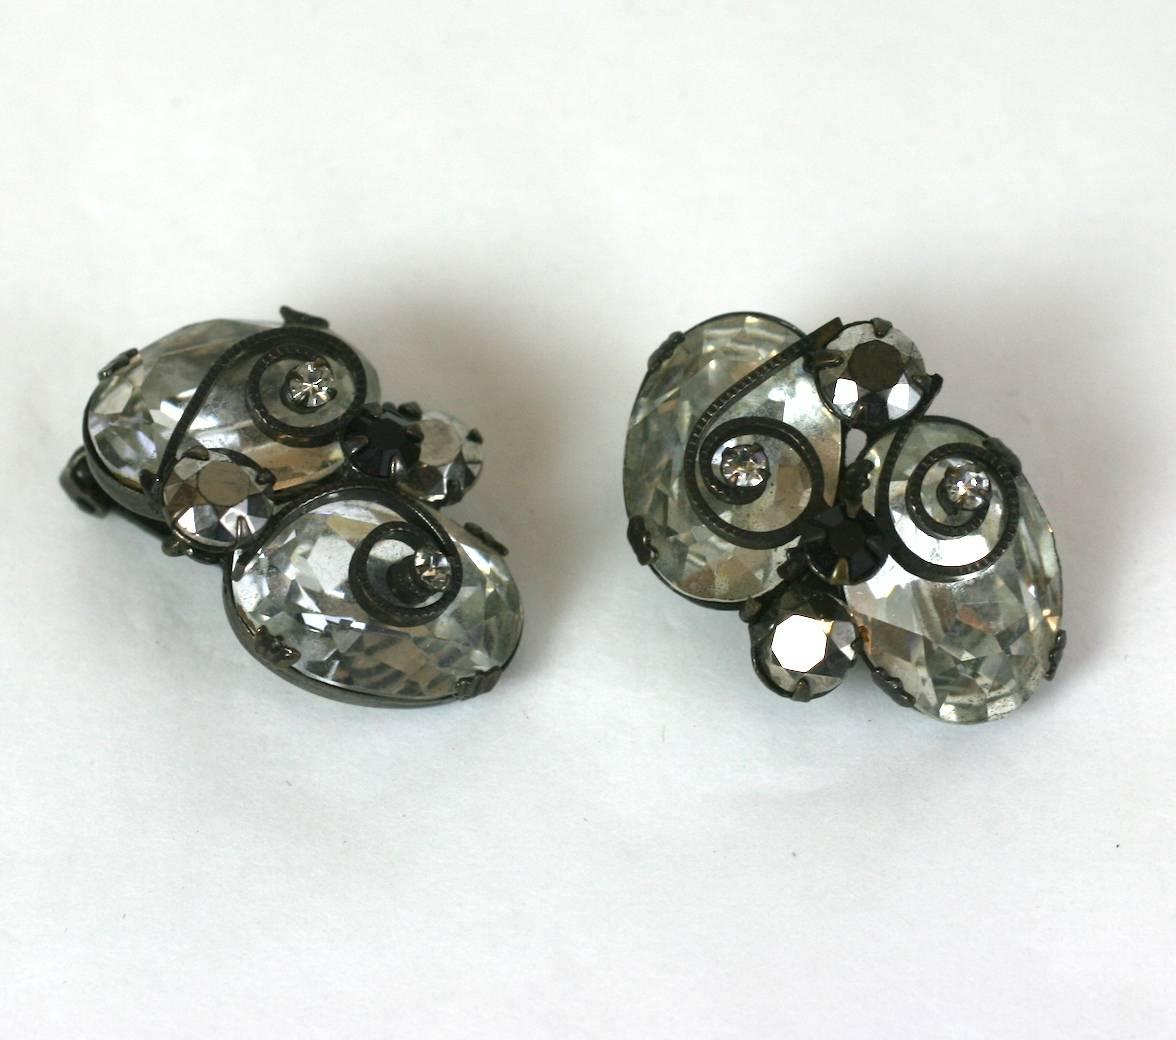 Auffällige Ohrclips in Schreiner-Kristall mit Hämatit- und Jet-Stein-Akzenten. Die Steine sind in japoniertes Metall gefasst, das einen auffälligen Kontrast bildet. Die verschnörkelten Metallakzente sind wie französische Eisenarbeiten überlagert.